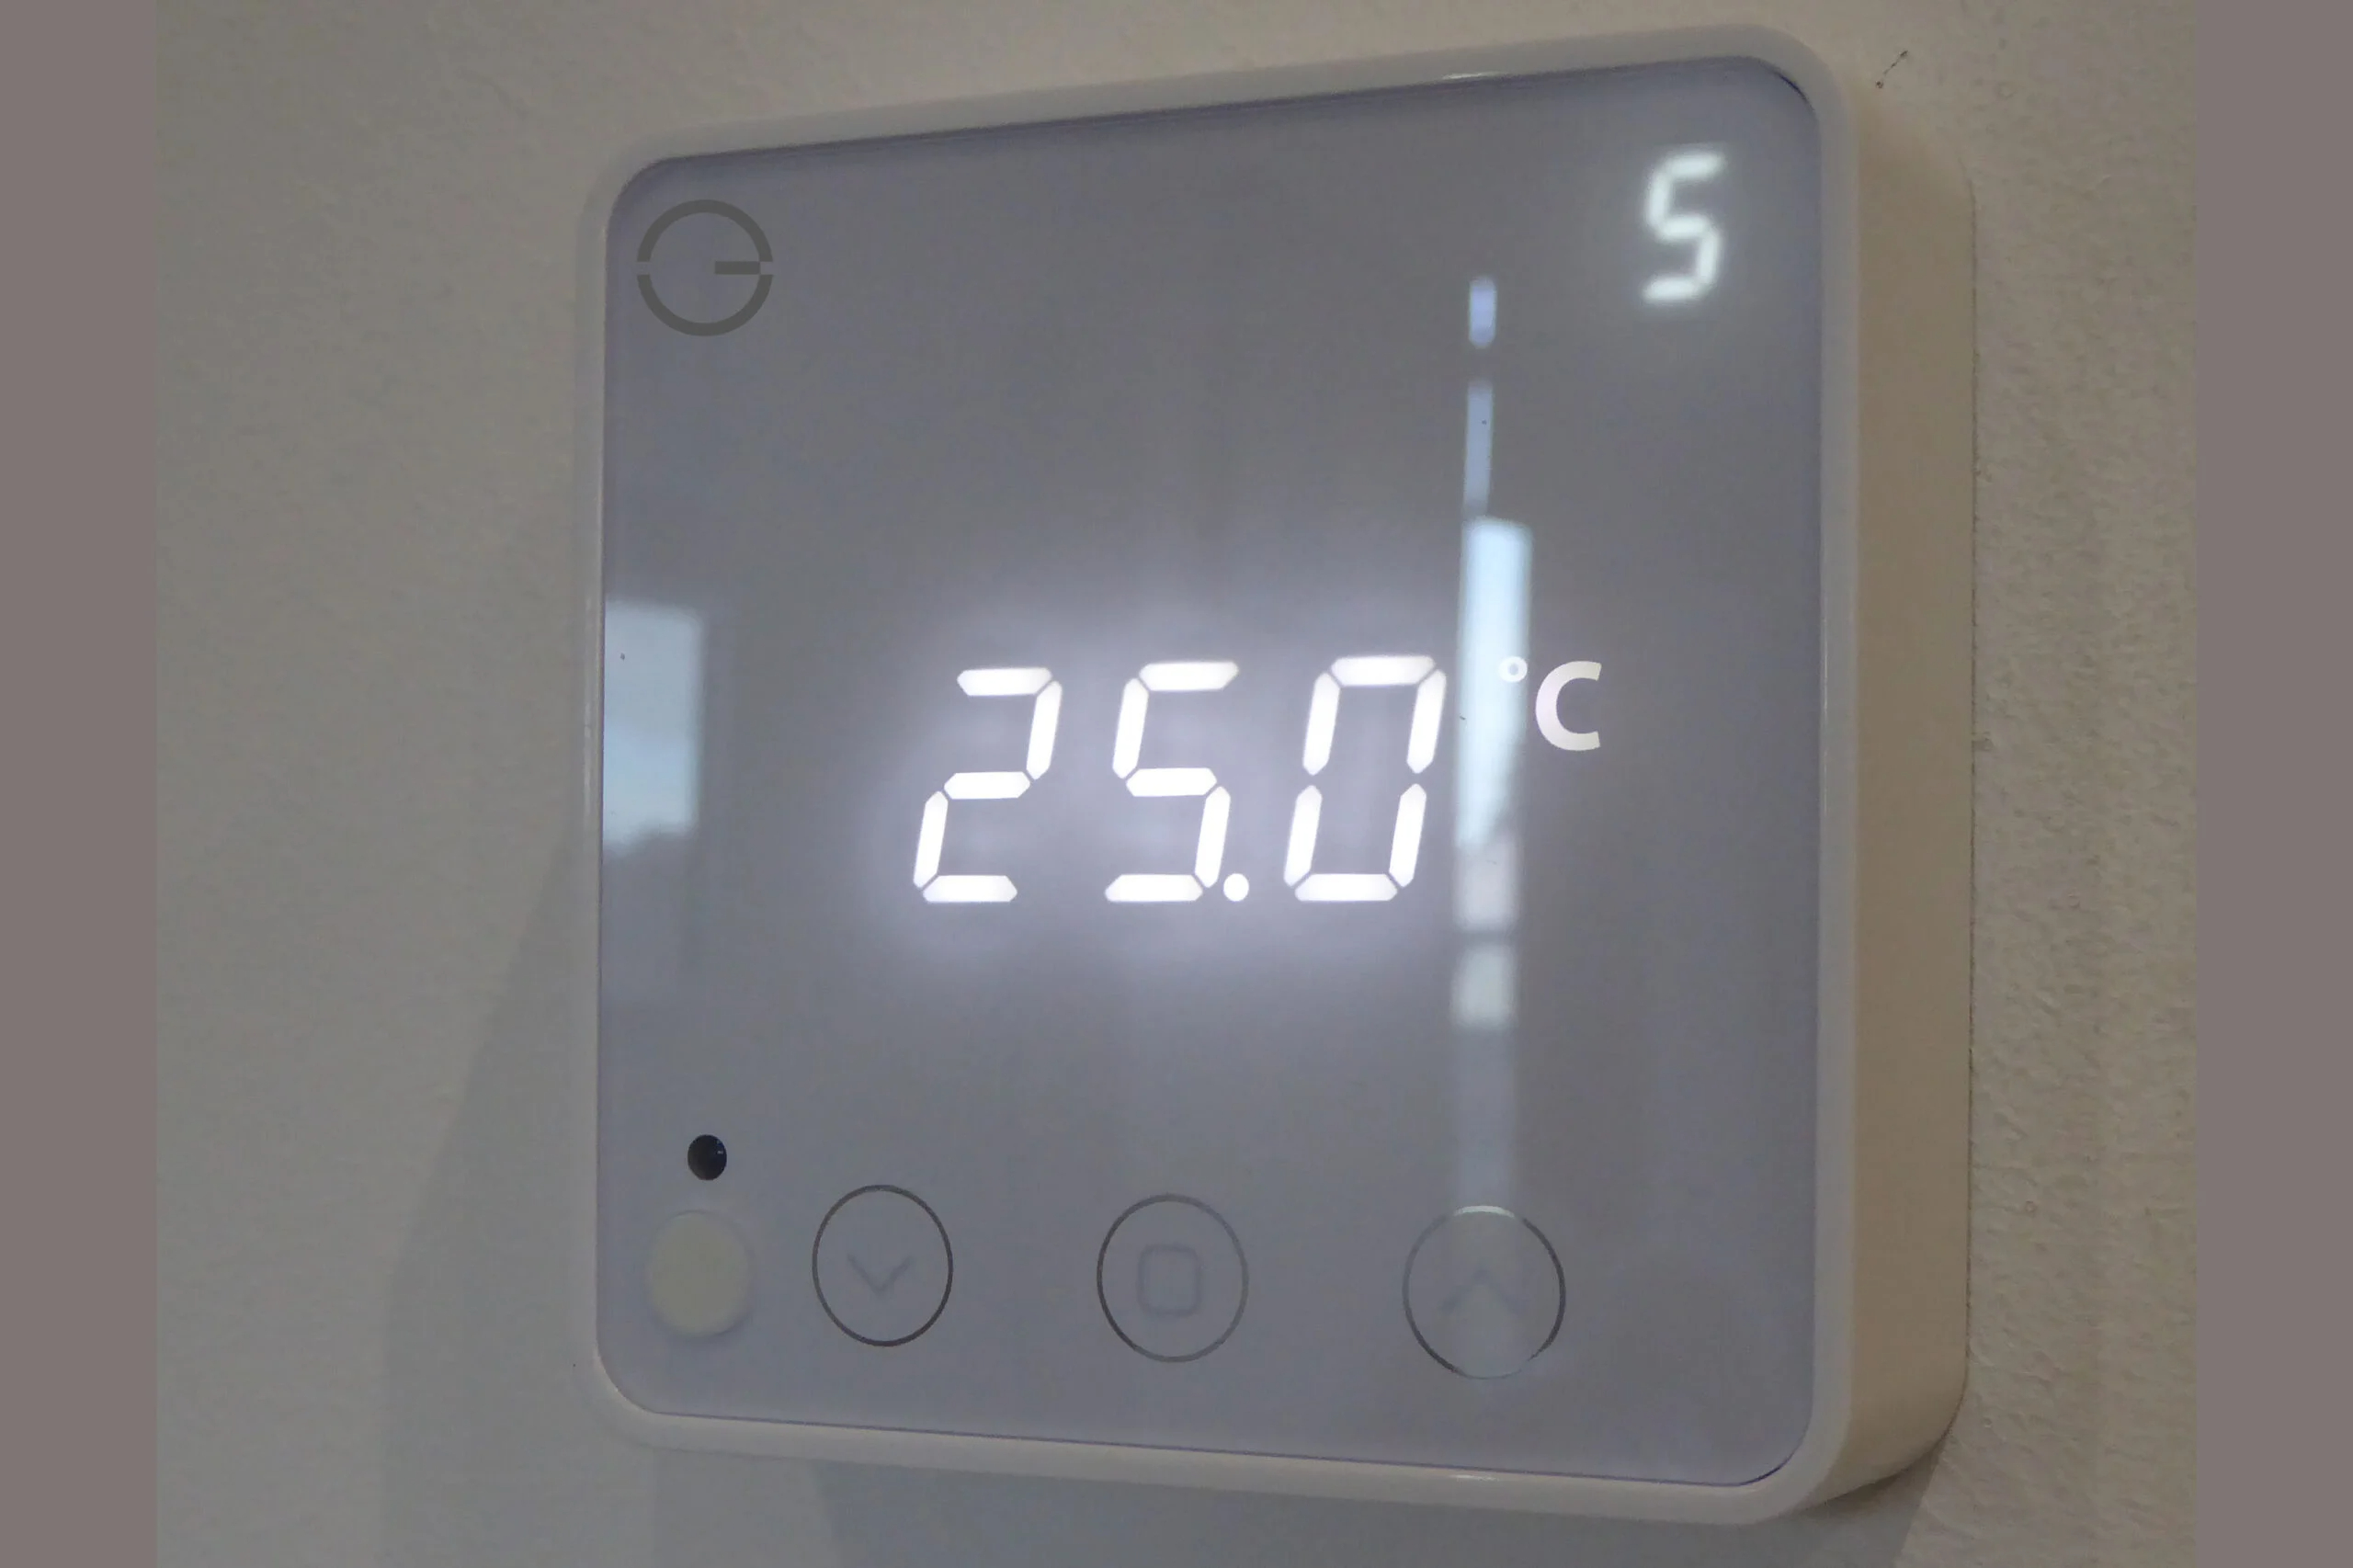 Indoor room temperature control system